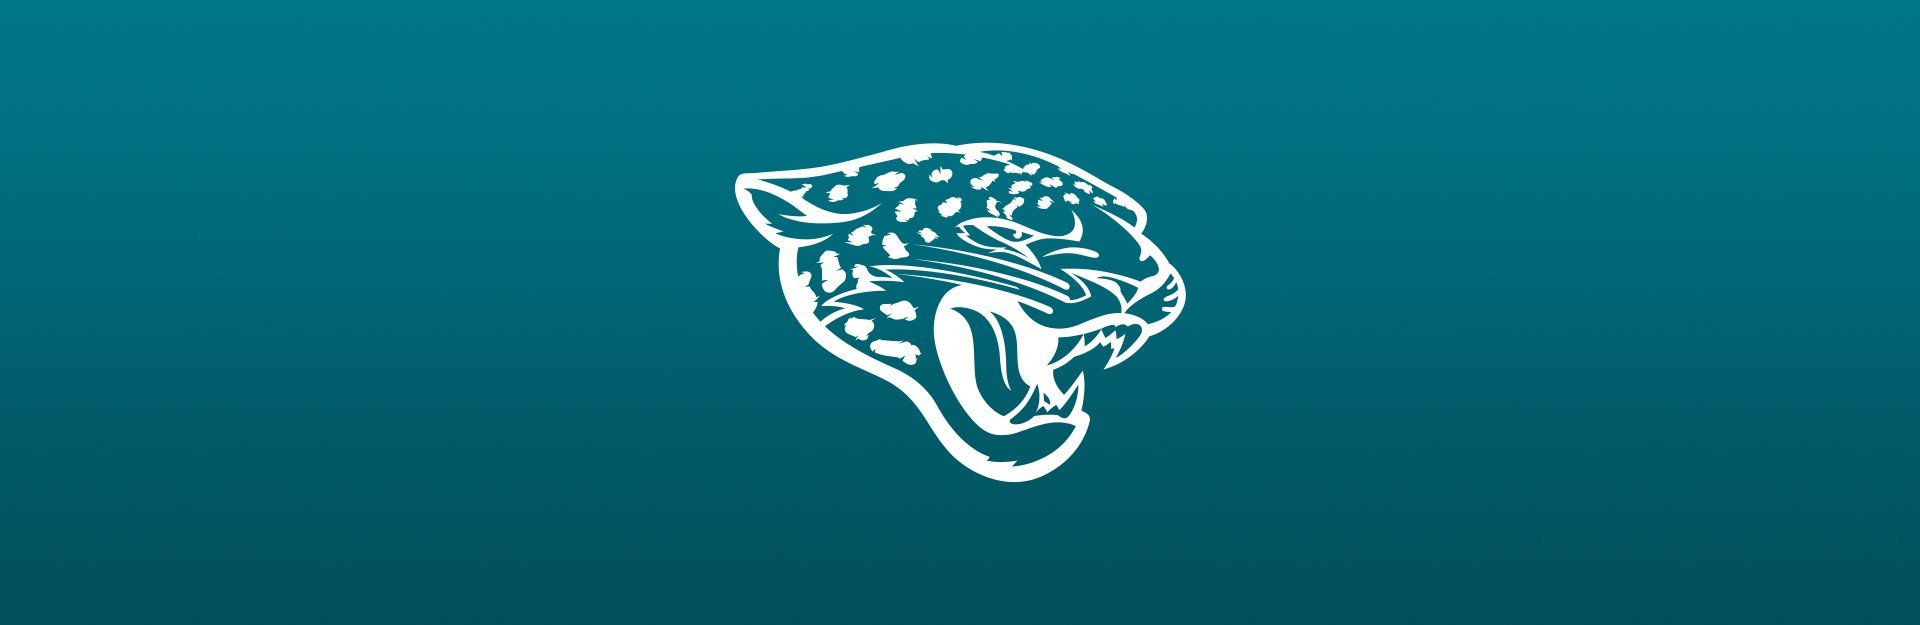 Jacksonville Jaguars logo on blue background